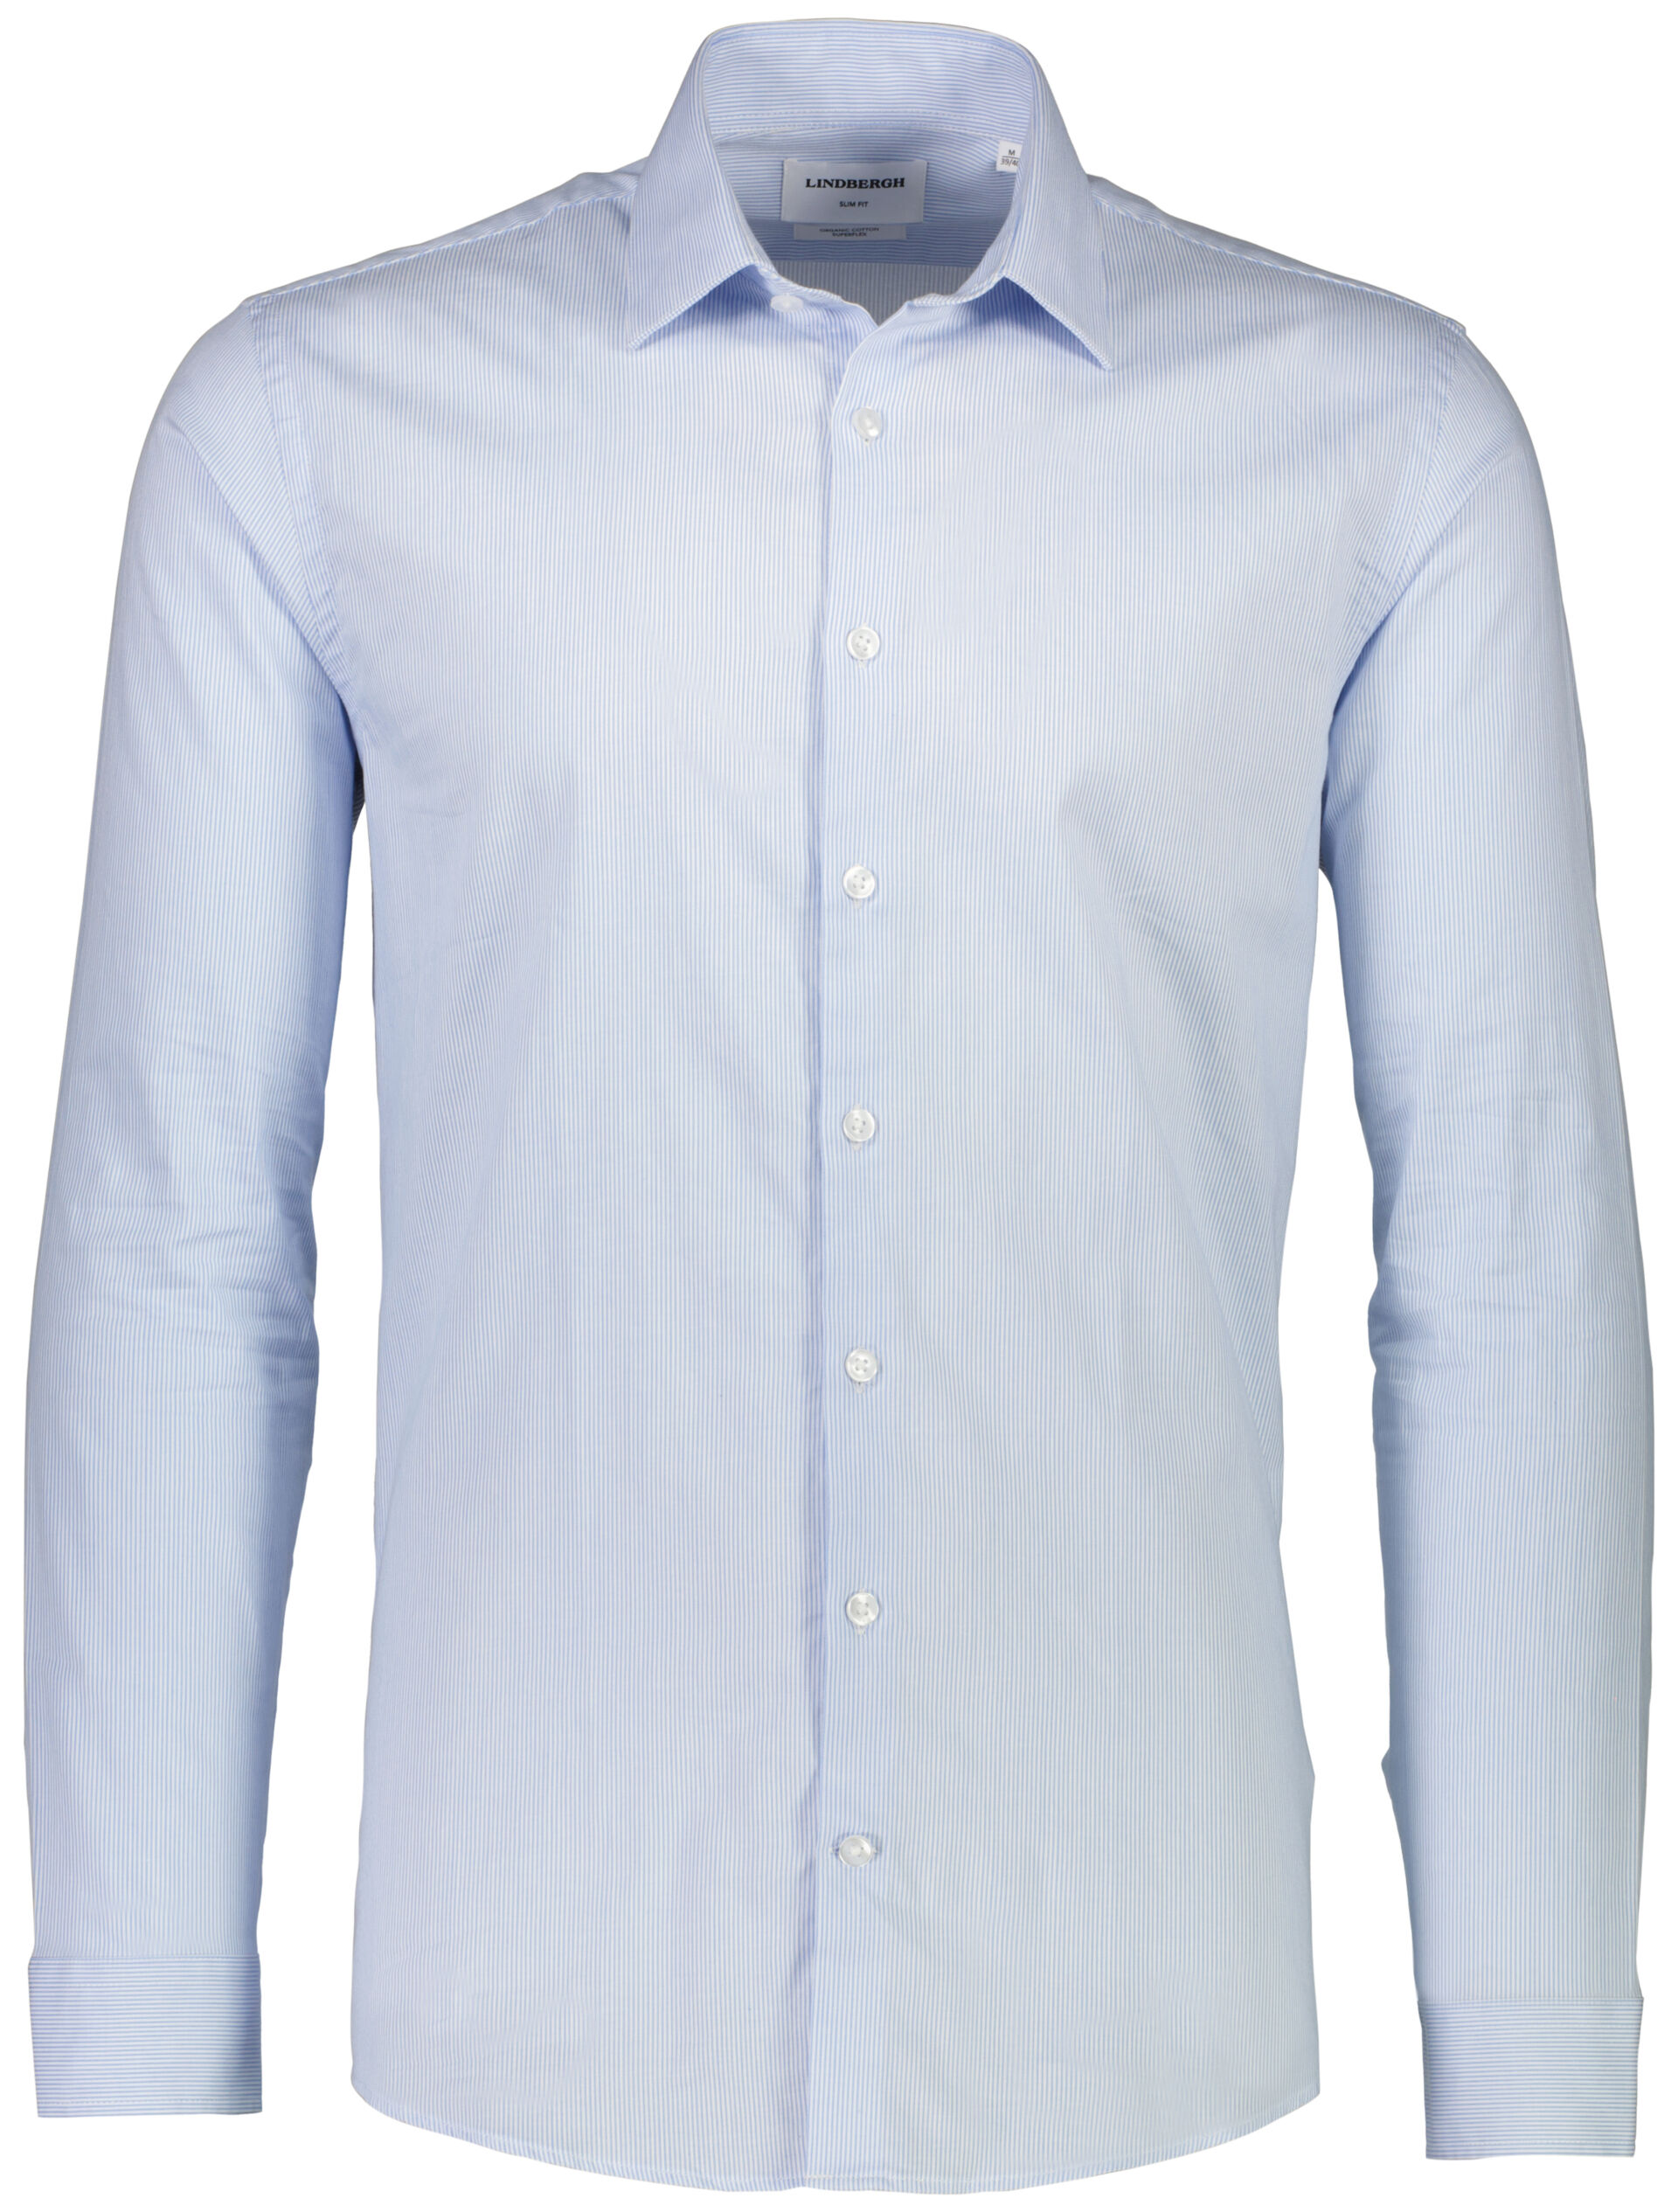 Business shirt Business shirt Blue 30-203312